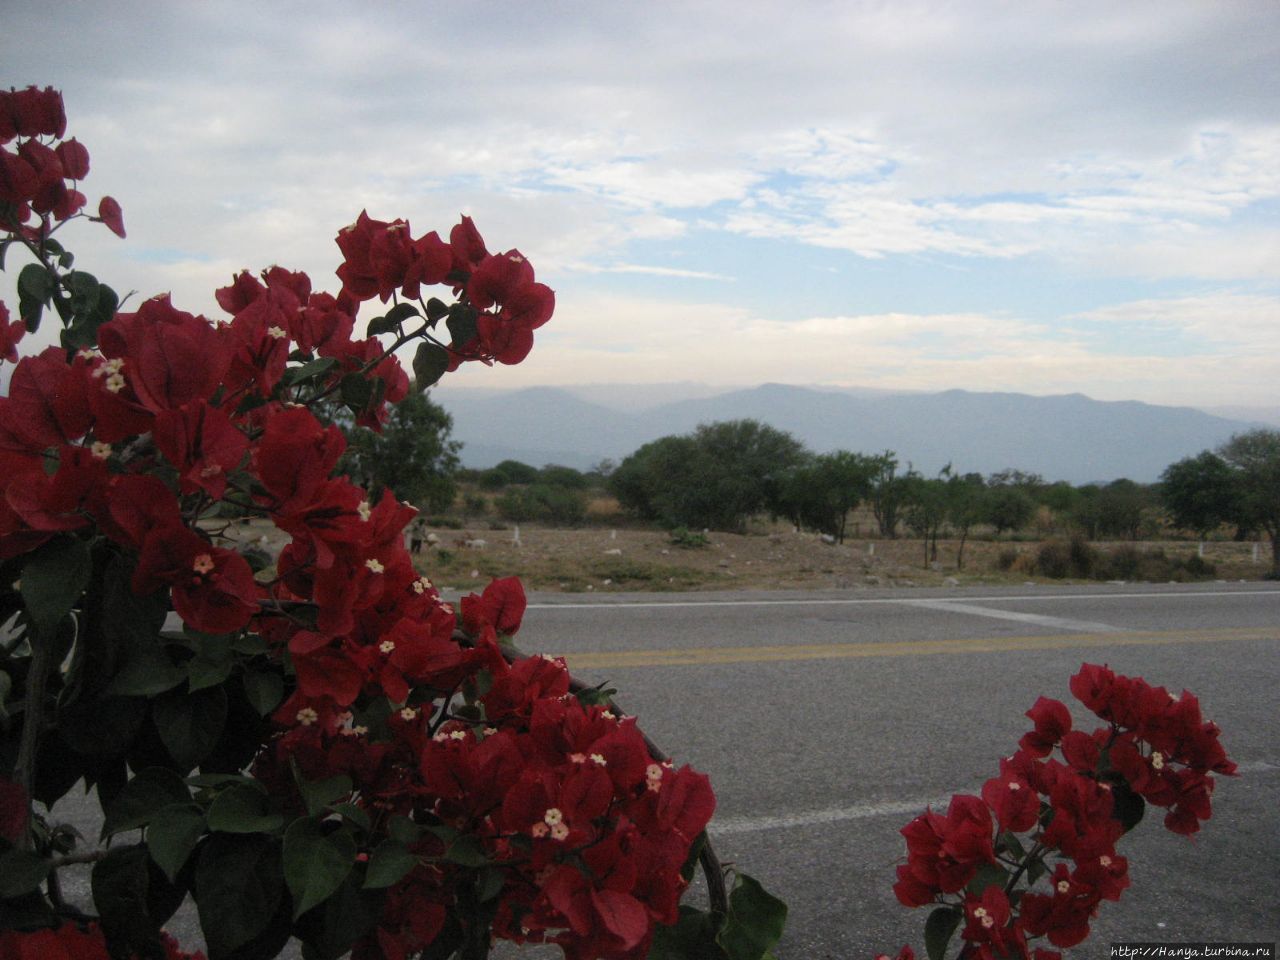 Гигантские кактусы мексиканской пустыни. Ч.49 Мексика